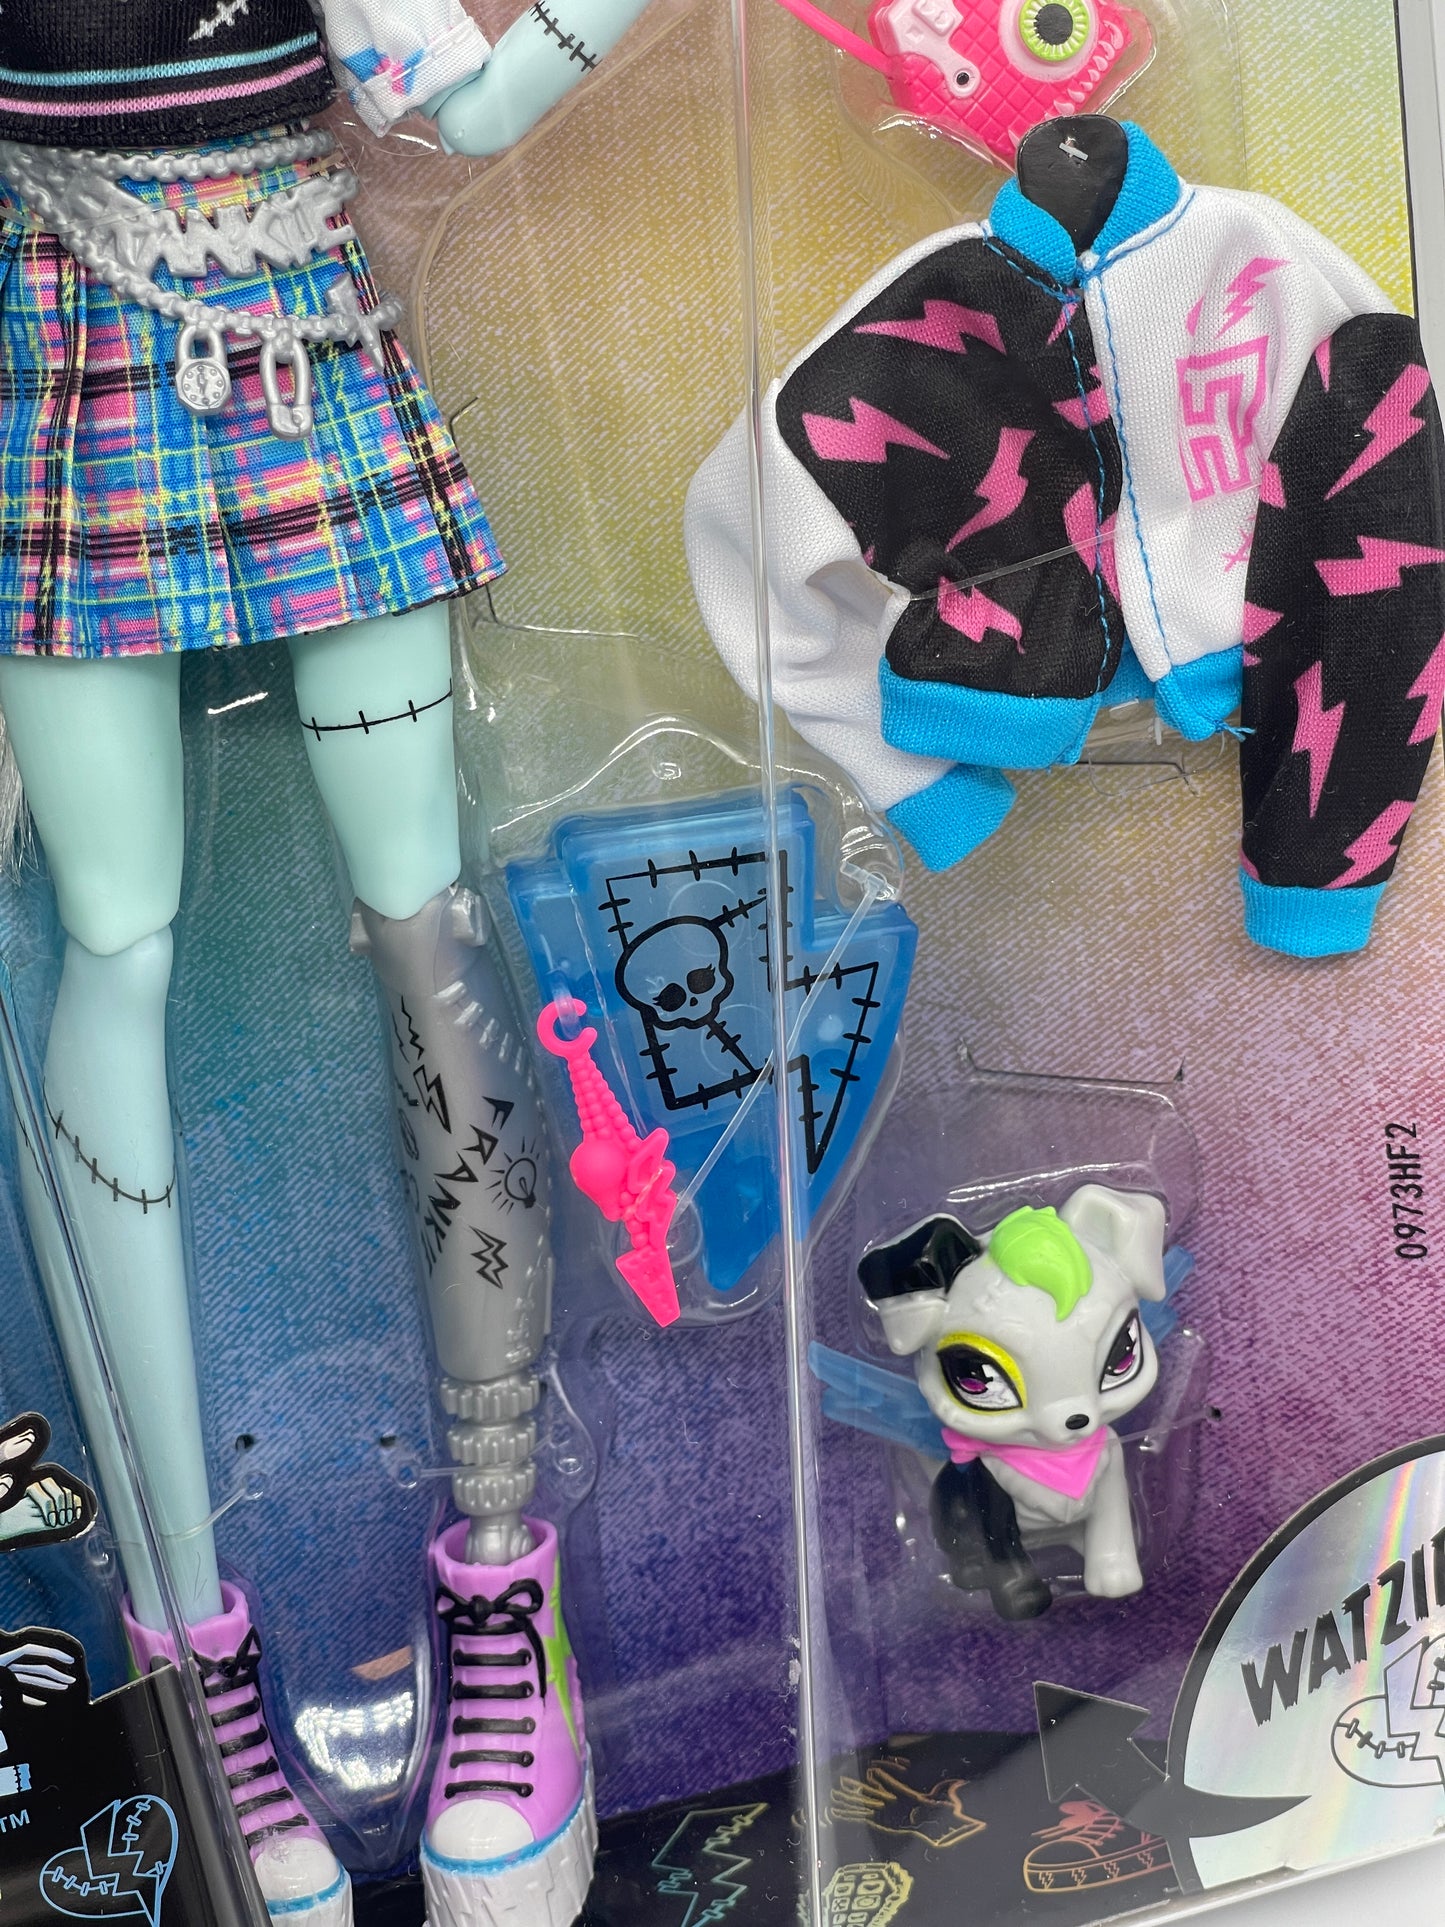 Monster High "Frankie Stein mit Watzie" Reboot, Mattel (2022)